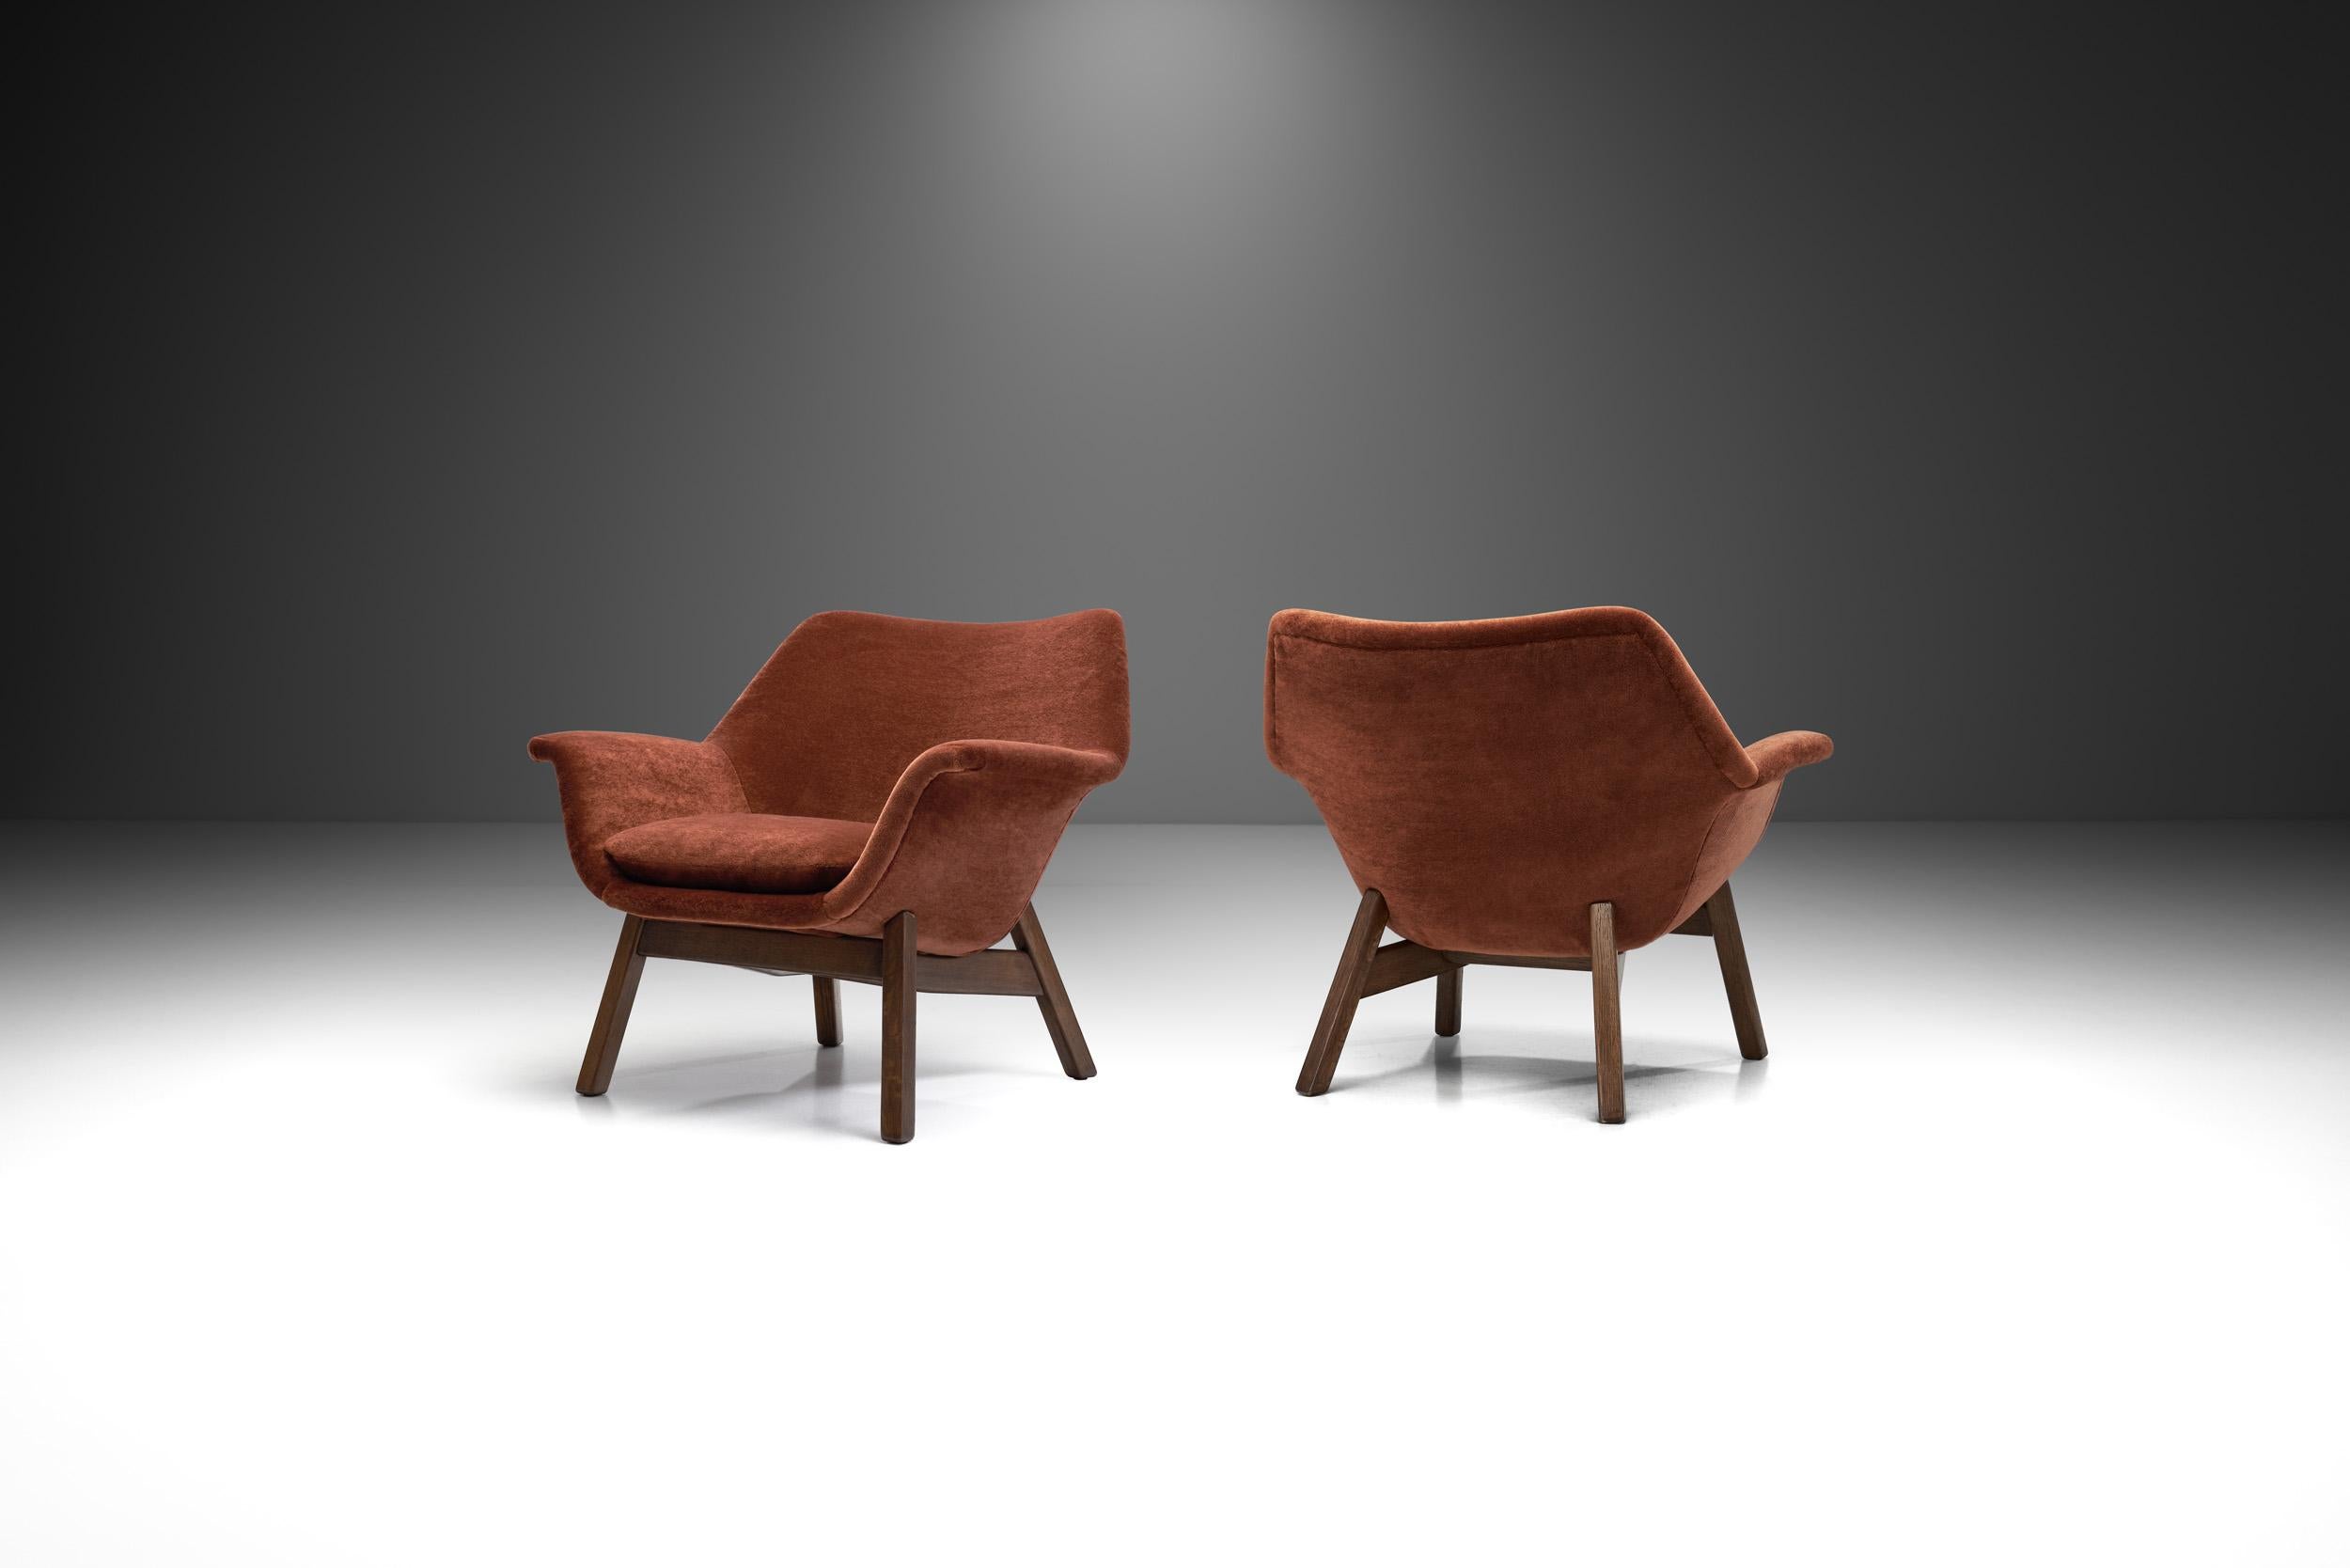 Cette paire de fauteuils en chêne met en valeur les courbes douces qui définissaient le design des années 1950 dans les pays nordiques. Hiort af Ornäs a développé le modèle pour sa propre entreprise de meubles, 